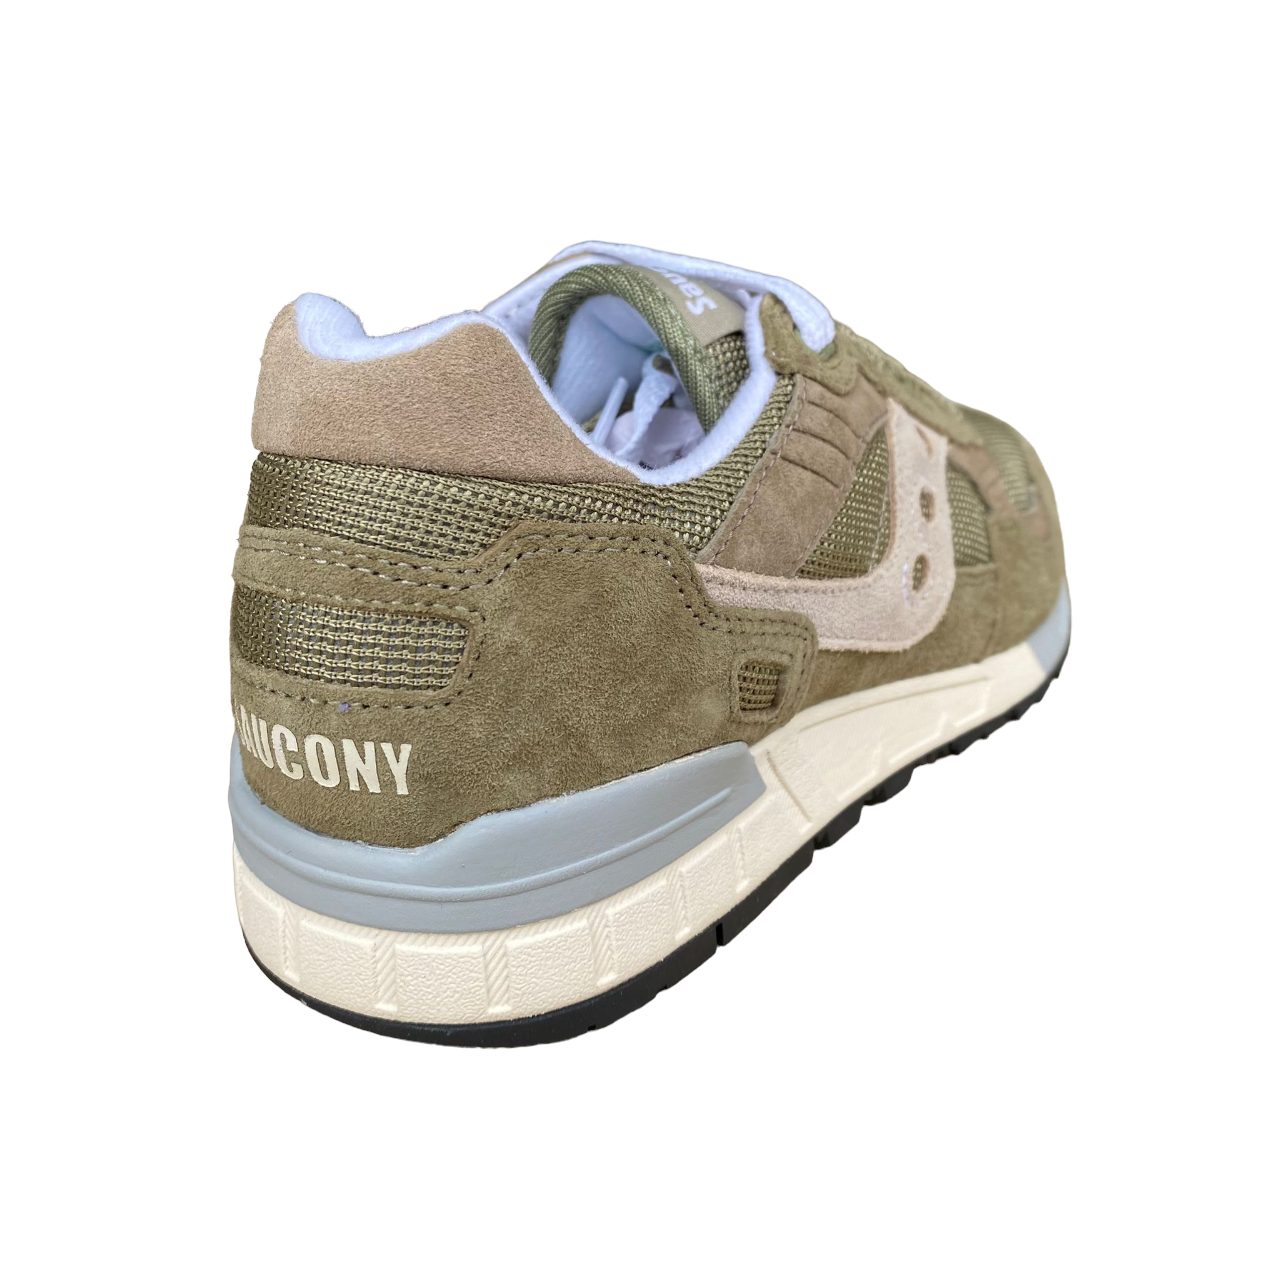 Saucony Originals men&#39;s sneakers shoe Shadow 5000 S70665-35 sage